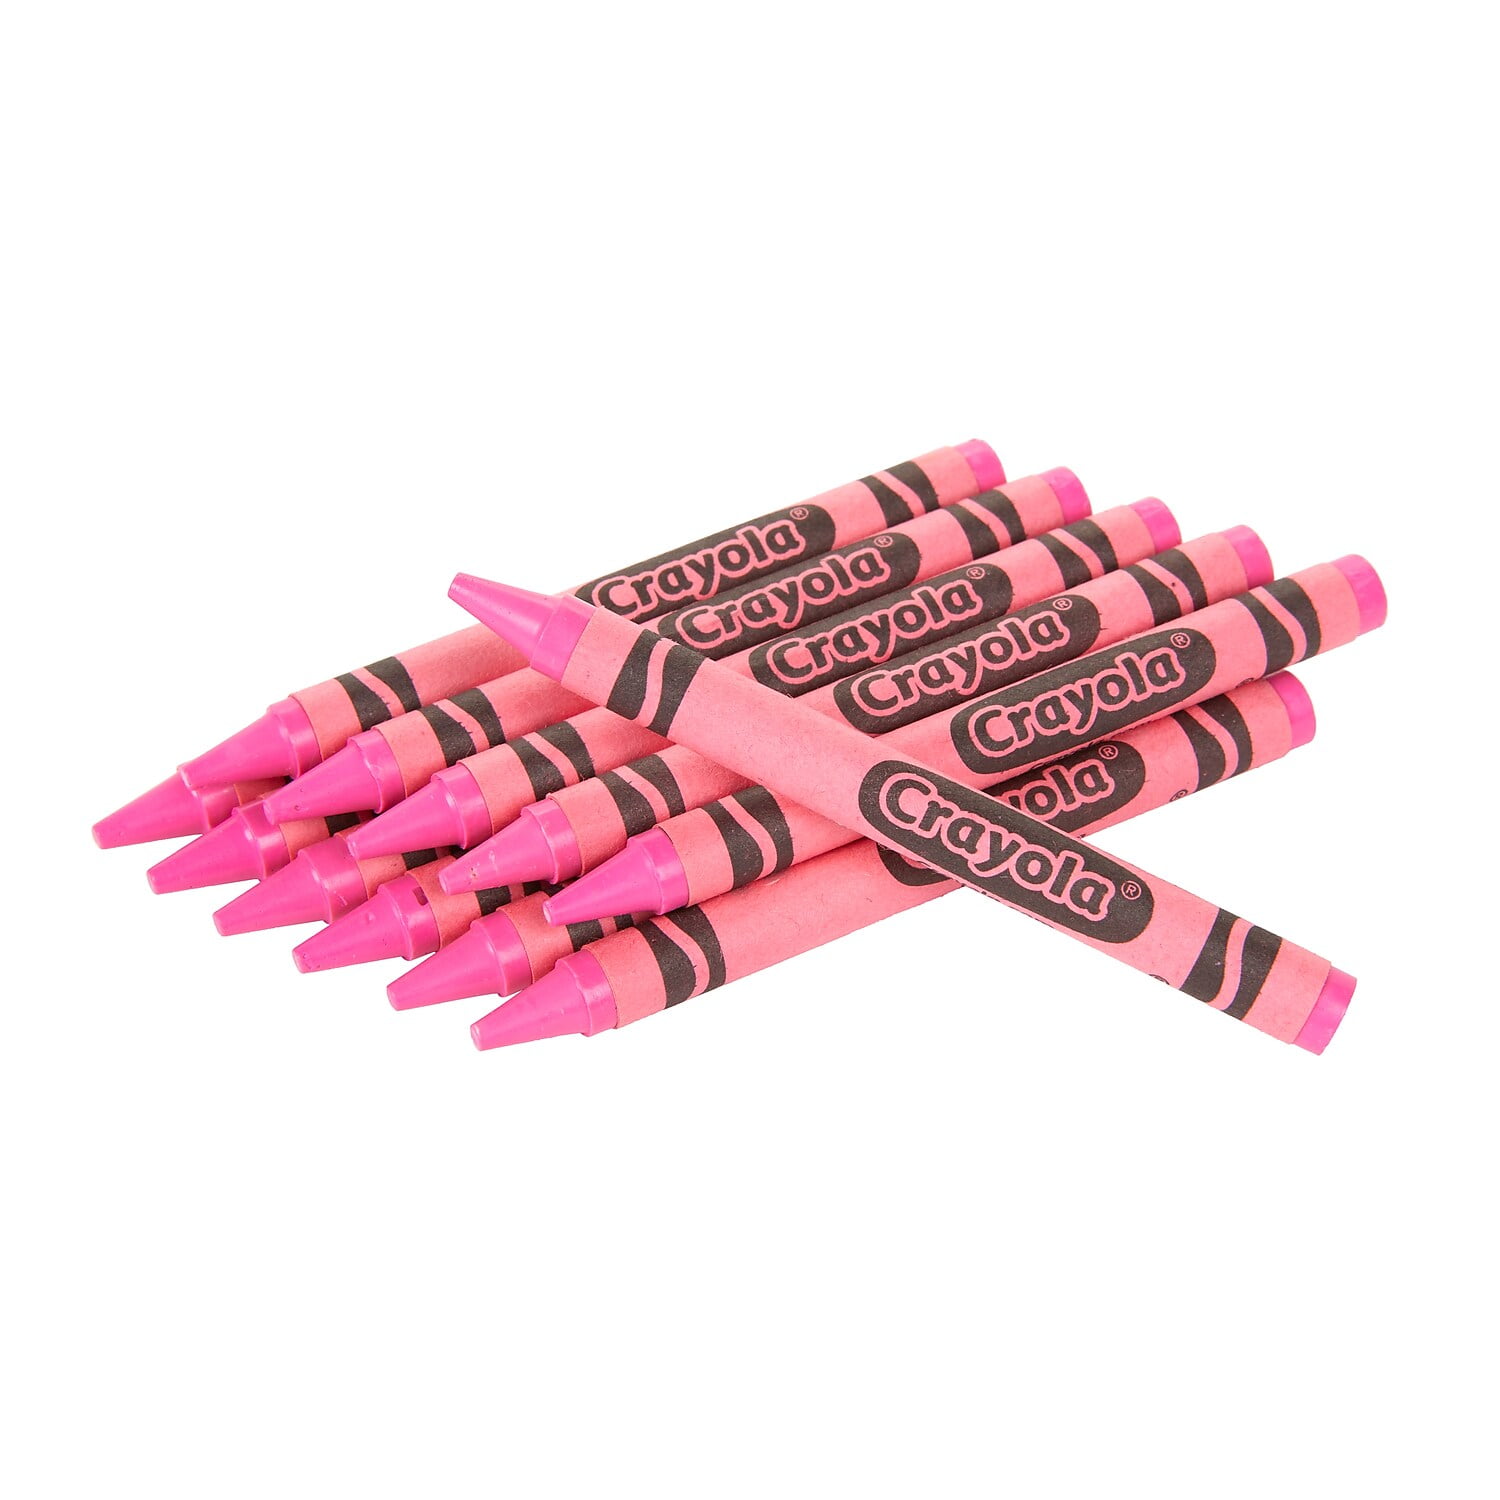 Crayola Large Crayons, Carnation Pink, 12/Box